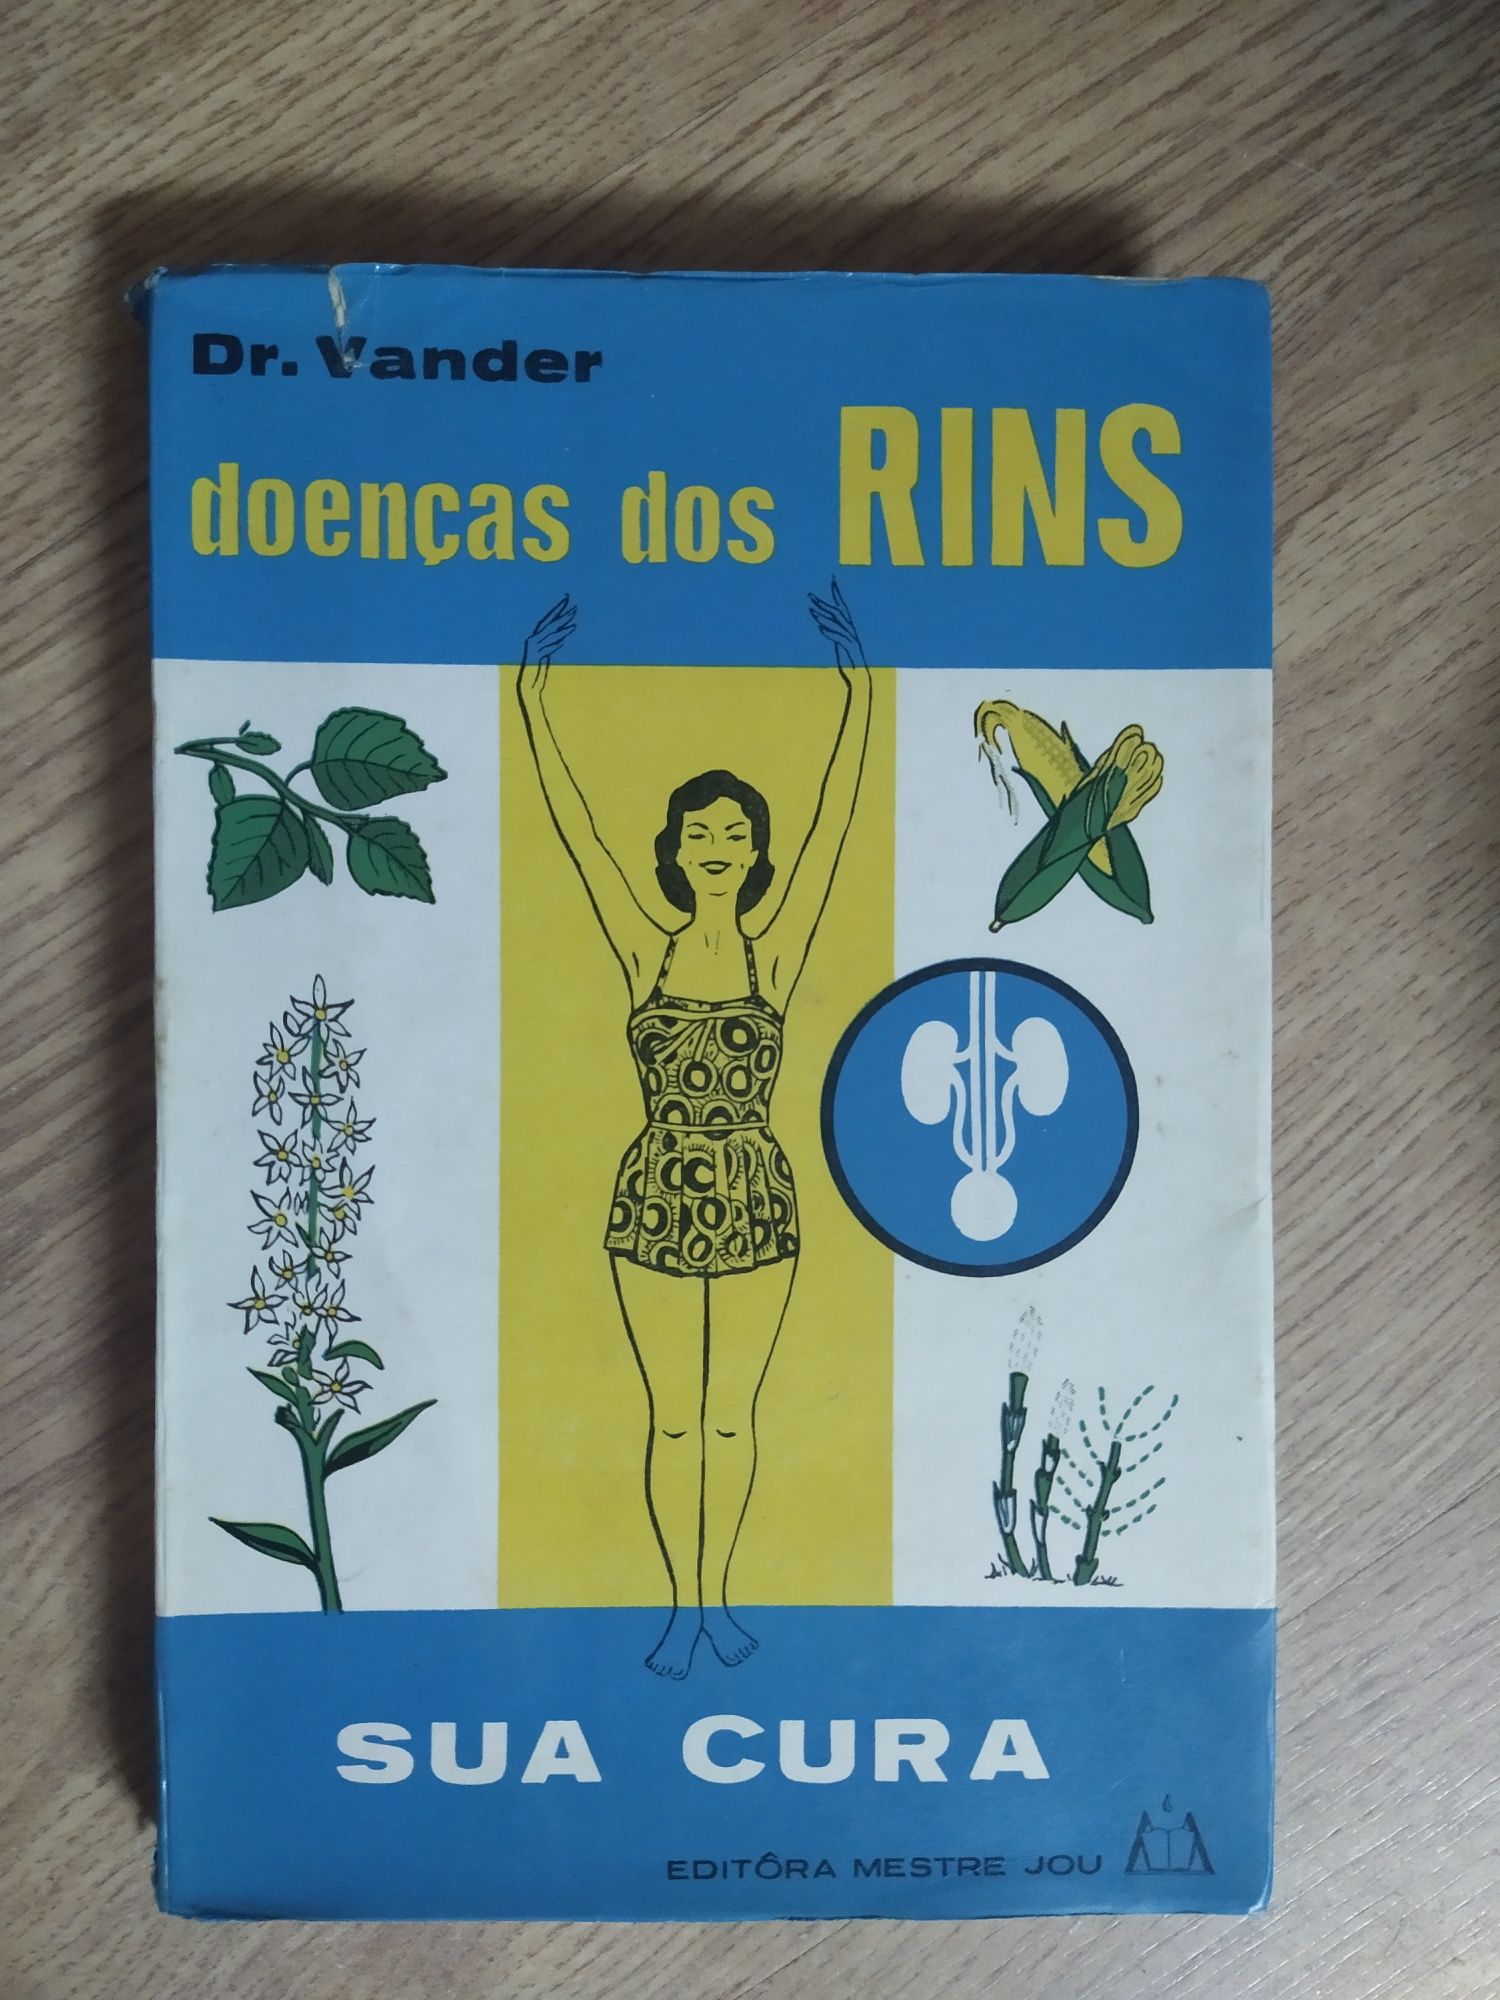 Vendo livro"Doenças dos Rins- Sua cura"de Dr.Vander-Medicina Naturista